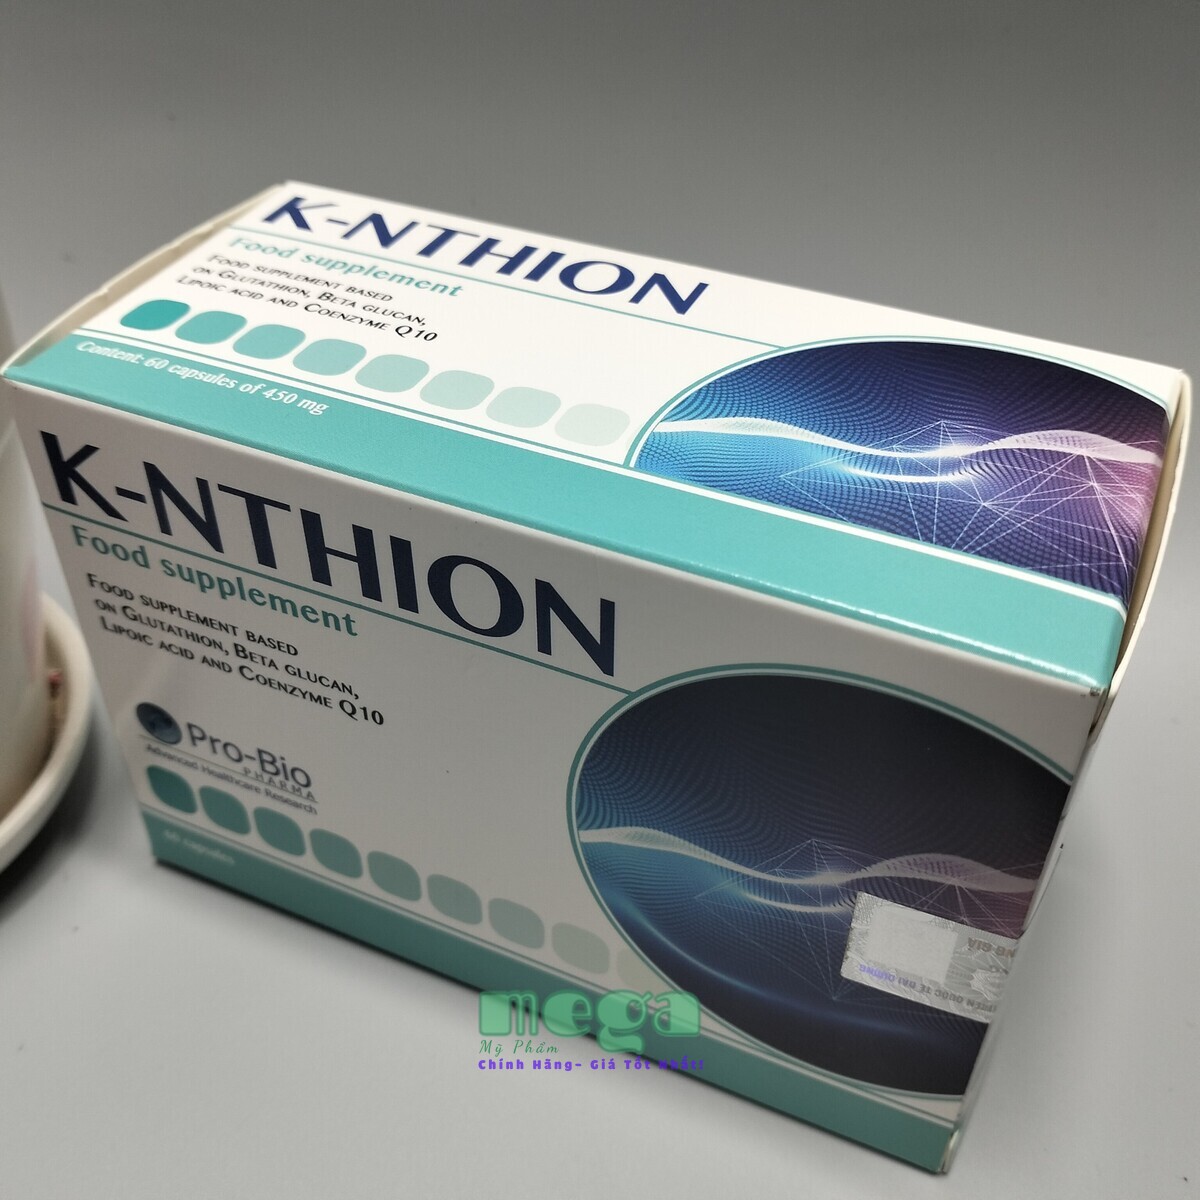 K-NTHION Glutathione